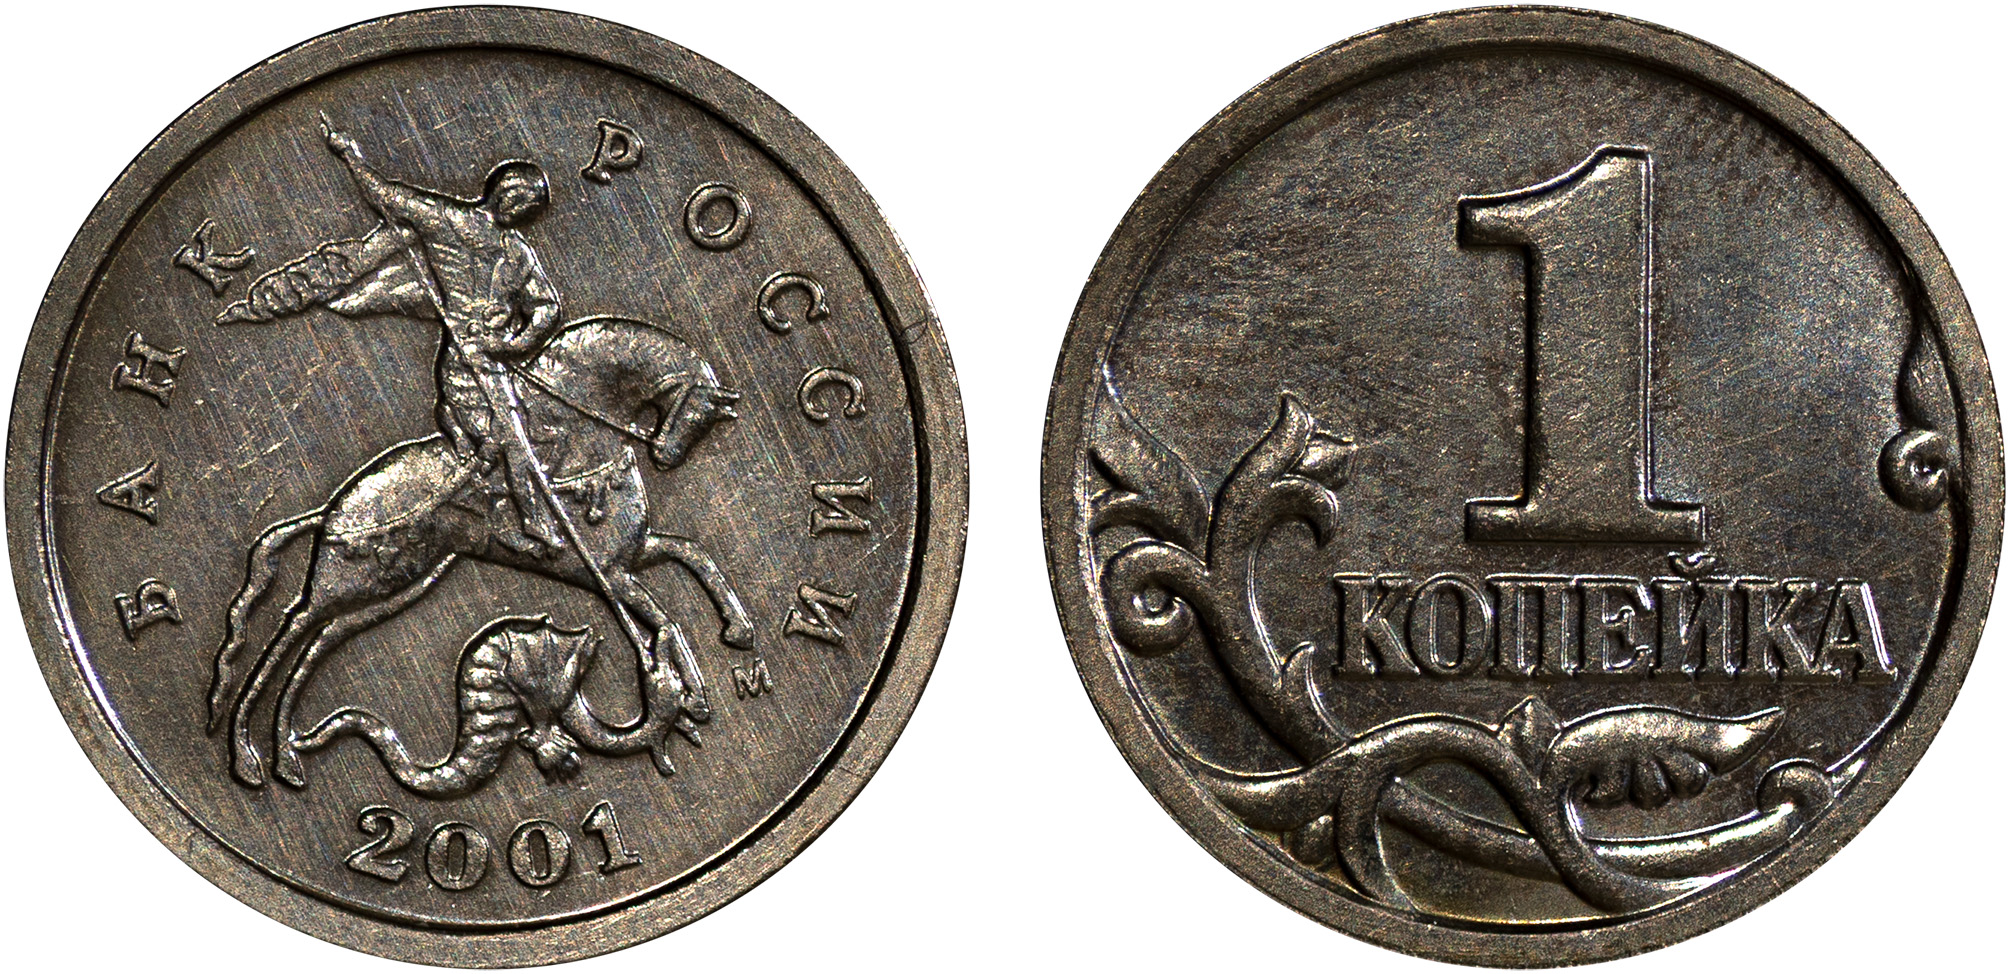 1 Копейка 2001 год. М (Московский монетный двор)